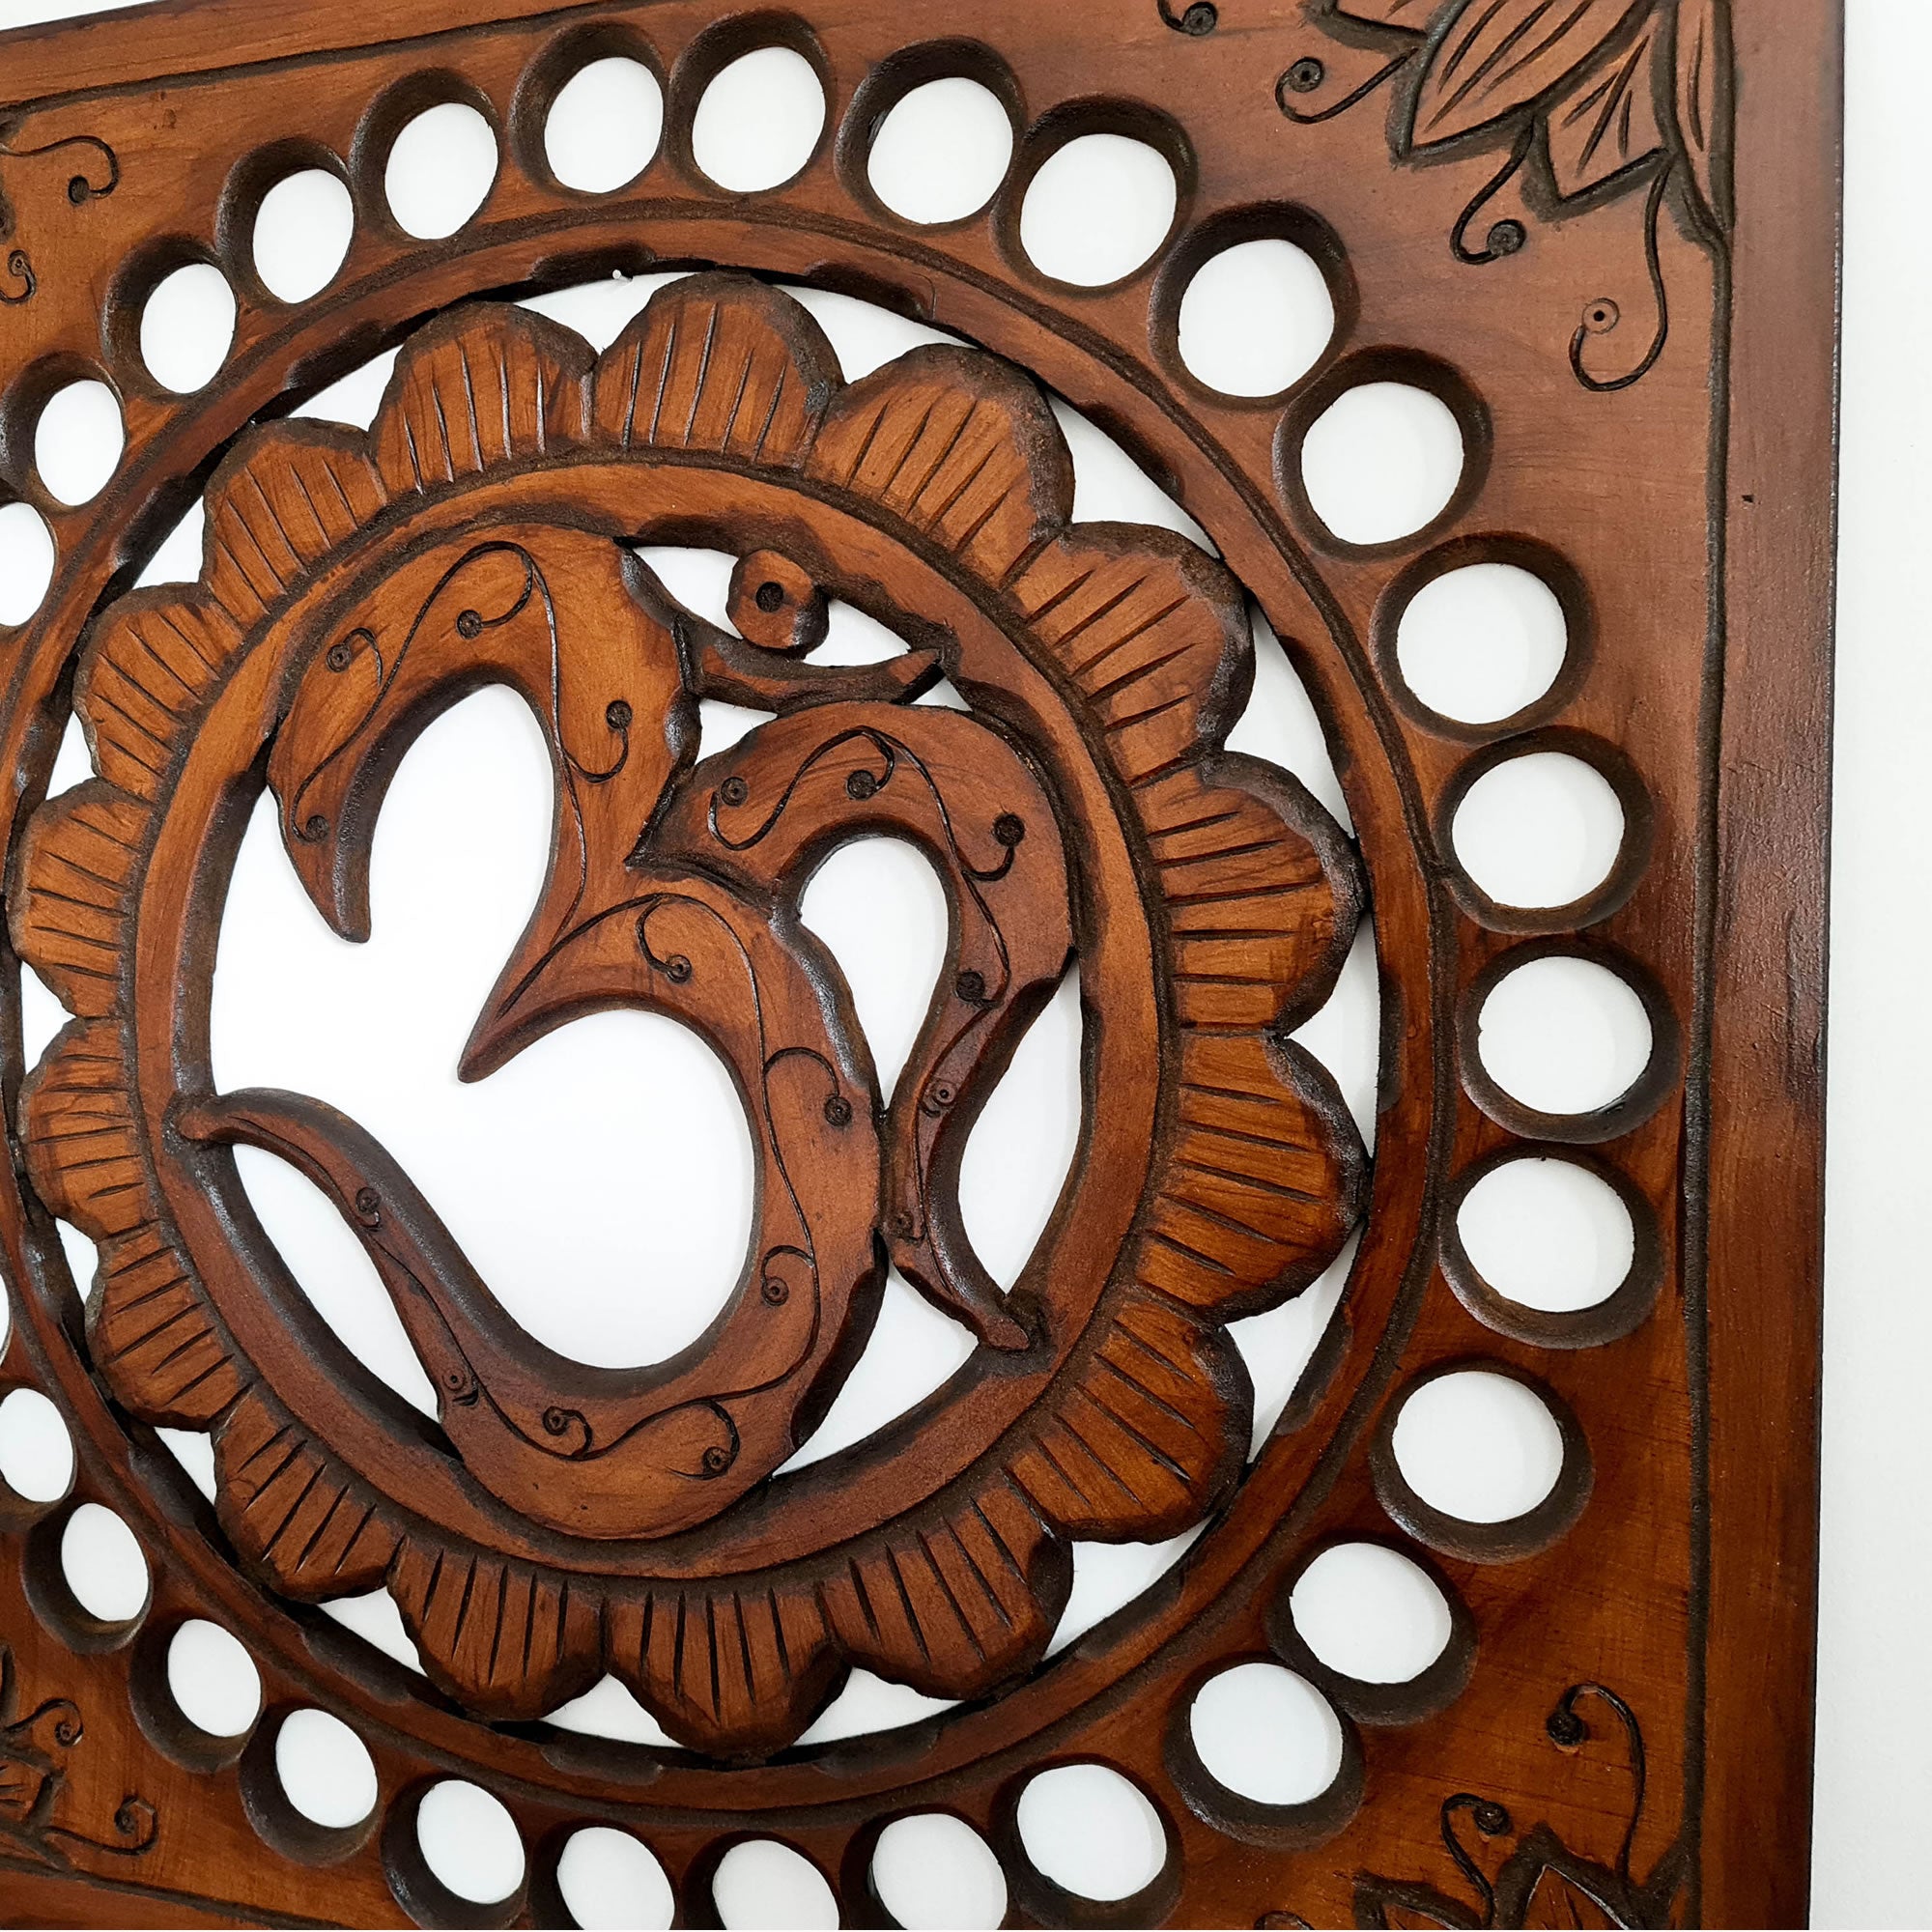 Handmade Carved Wooden Decorative Wall Art OM Mantra Mandir Meditation - Easternada